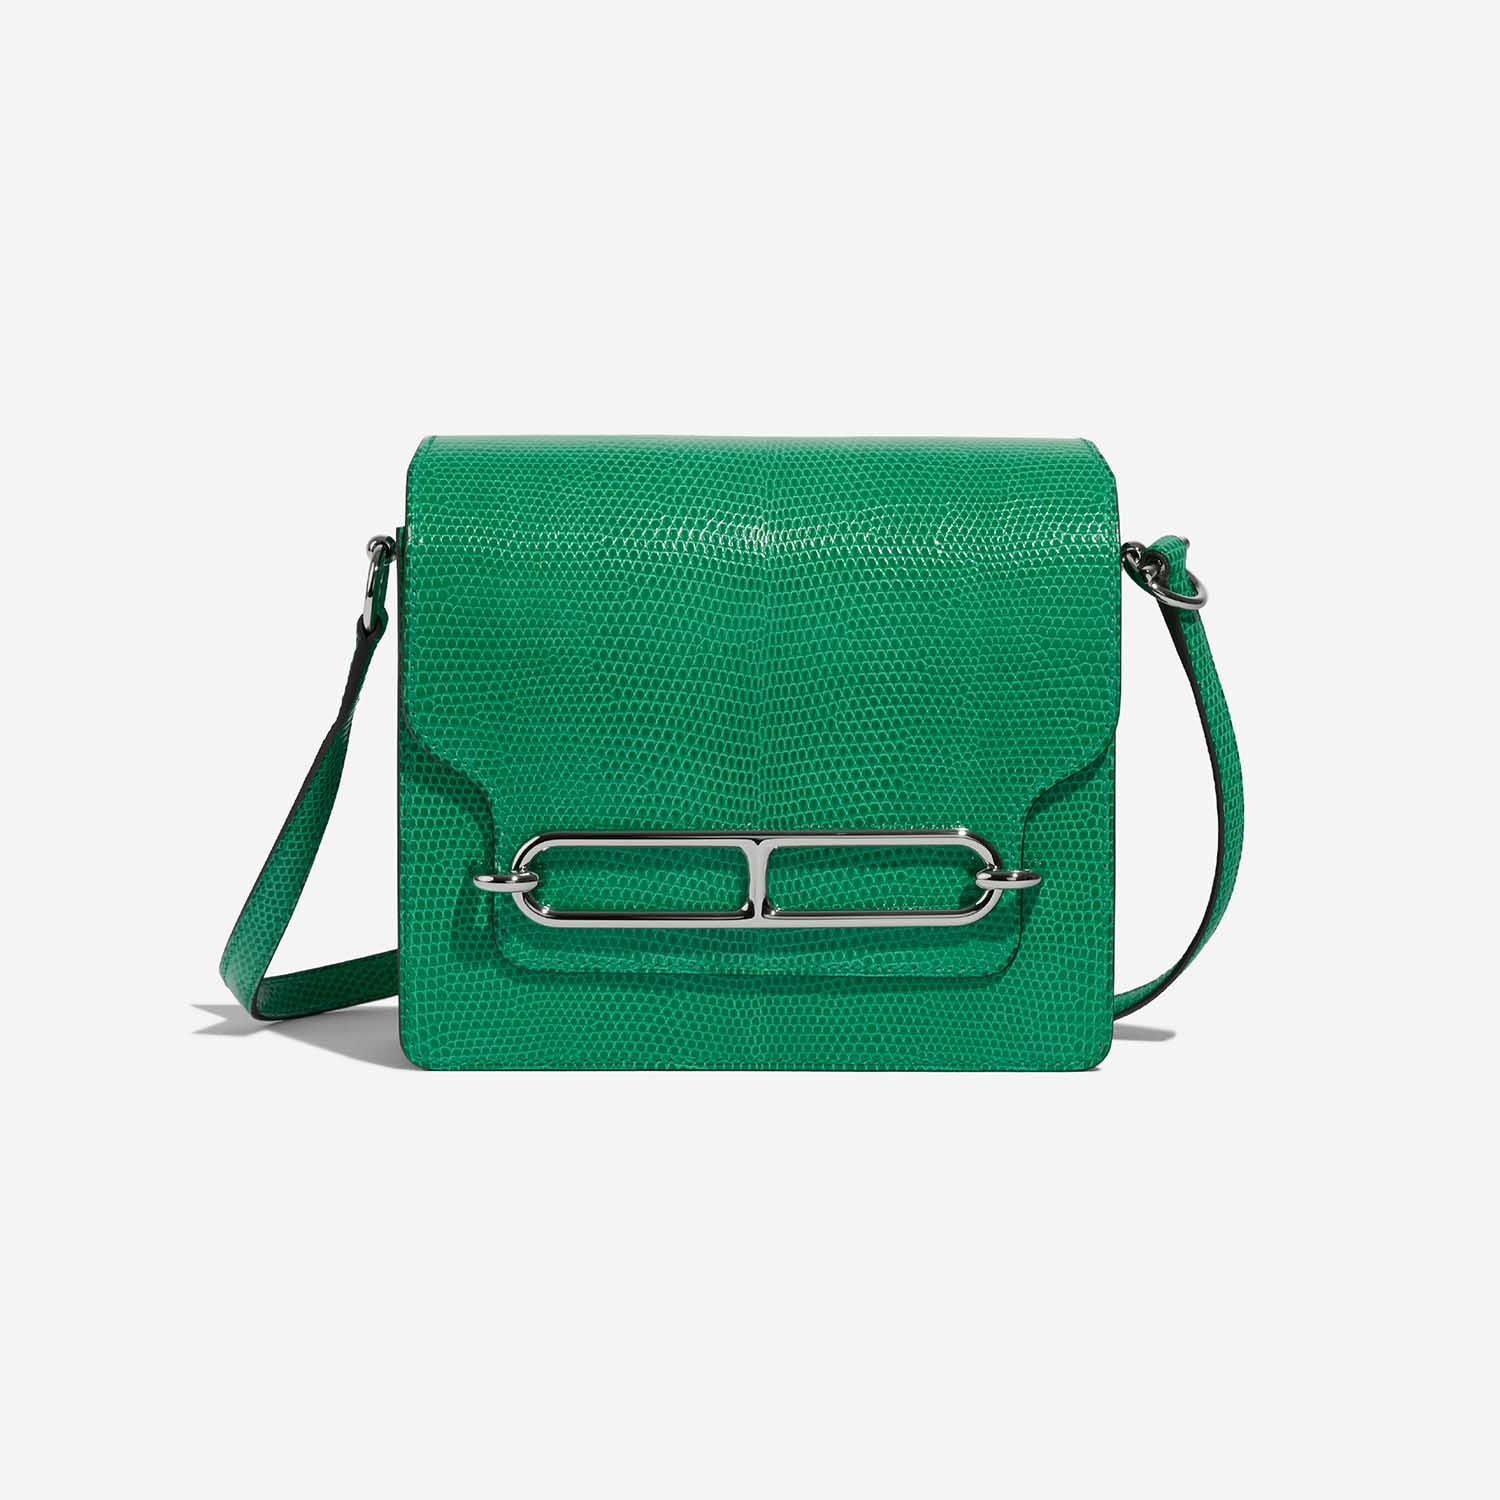 Sac Hermès d'occasion Roulis 18 lézard Vert Menthe Green Front | Vendez votre sac de créateur sur Saclab.com